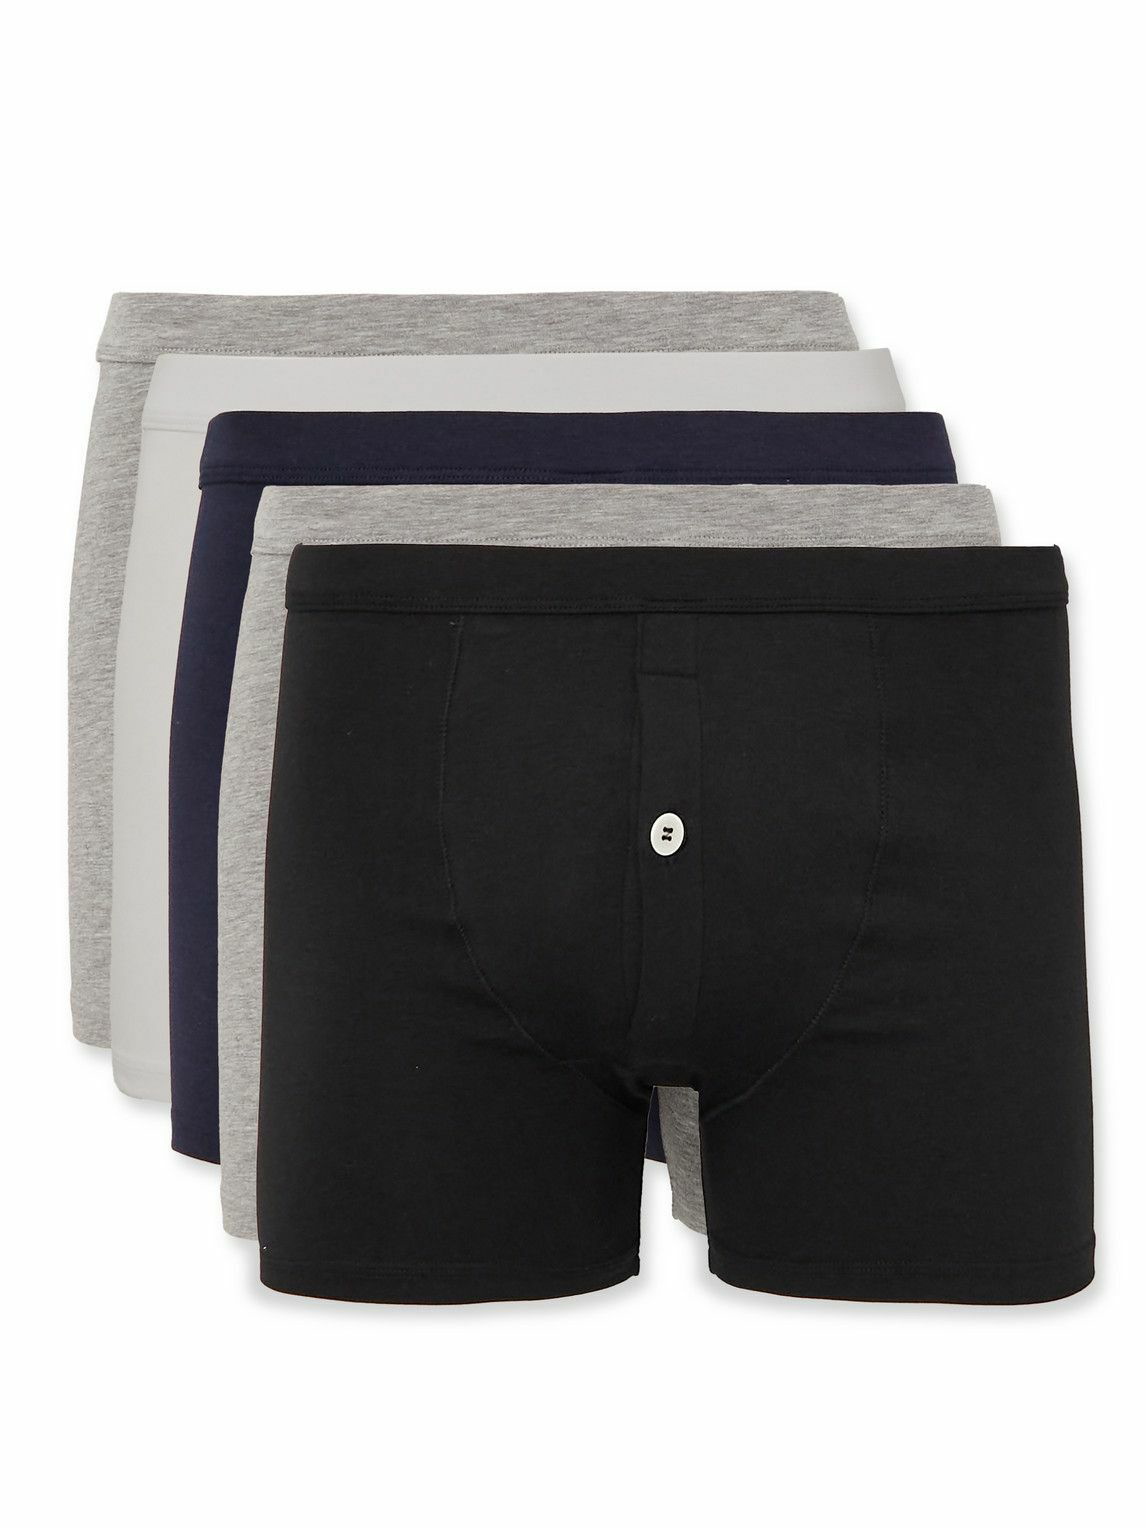 Black Pack of five cotton-blend boxer briefs, Calvin Klein Underwear